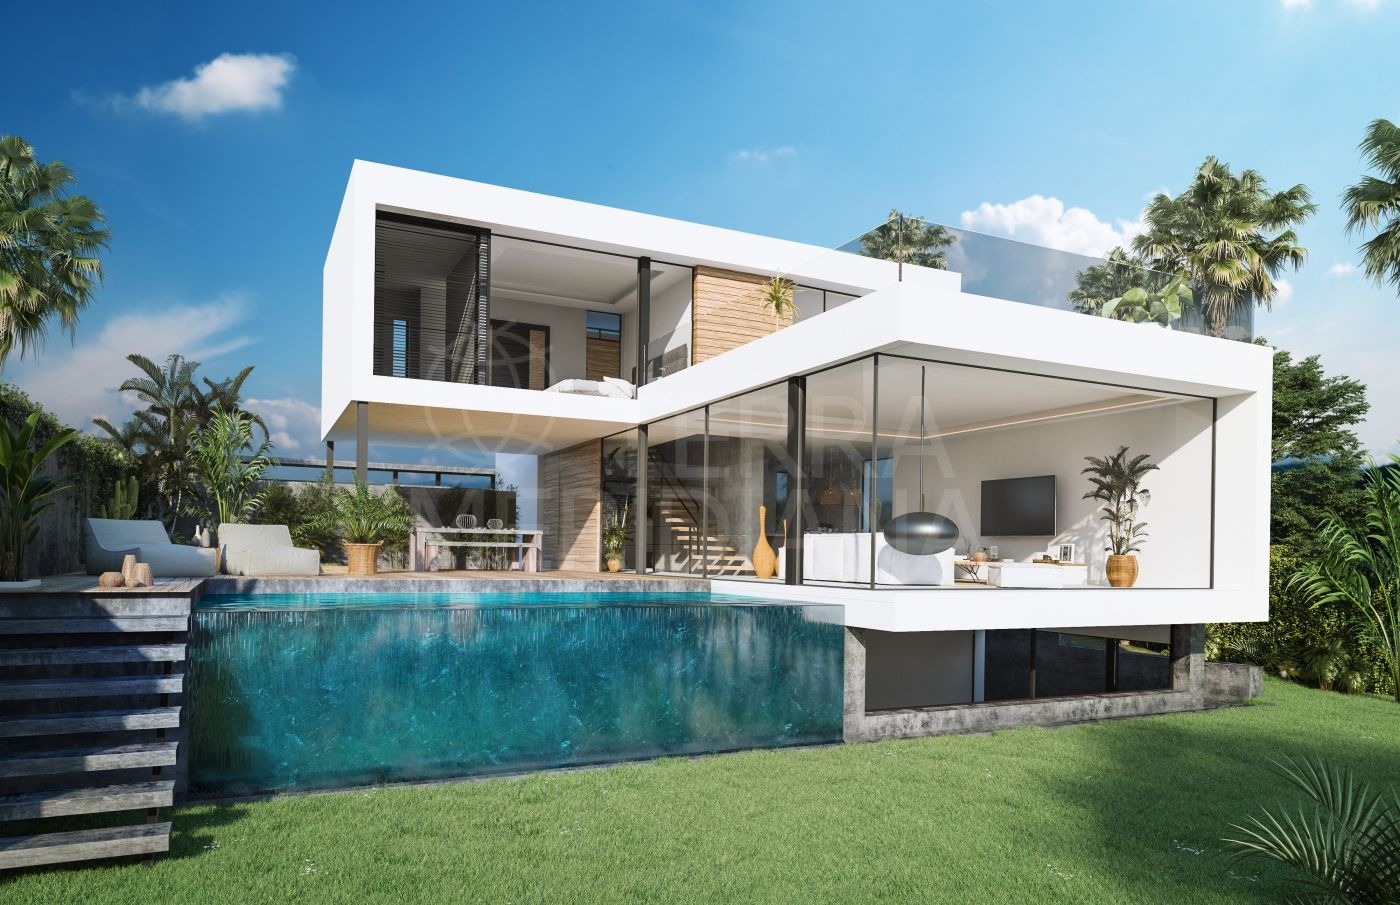 Preciosa vivienda unifamiliar en venta, situada en El Campanario, cerca de Puerto Banus con piscina privada.